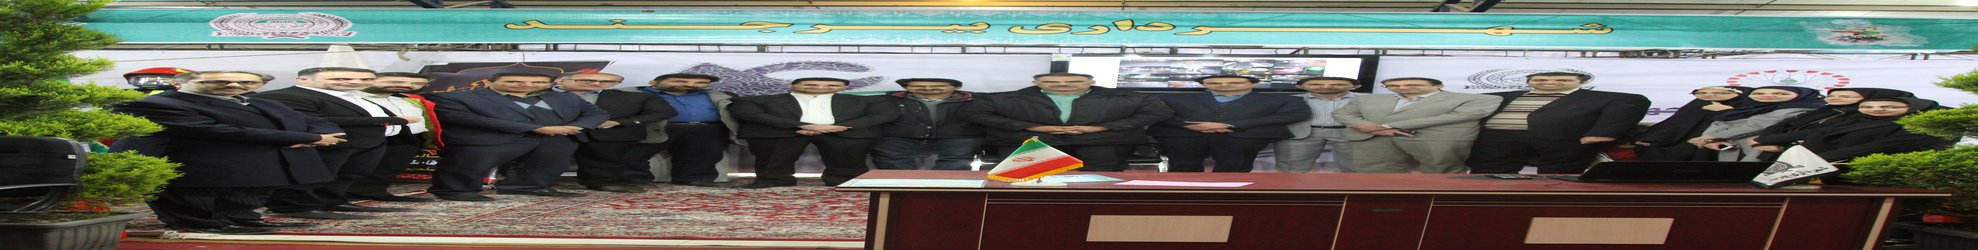 حضور شهرداری بیرجند در نمایشگاه دستاوردهای انقلاب اسلامی